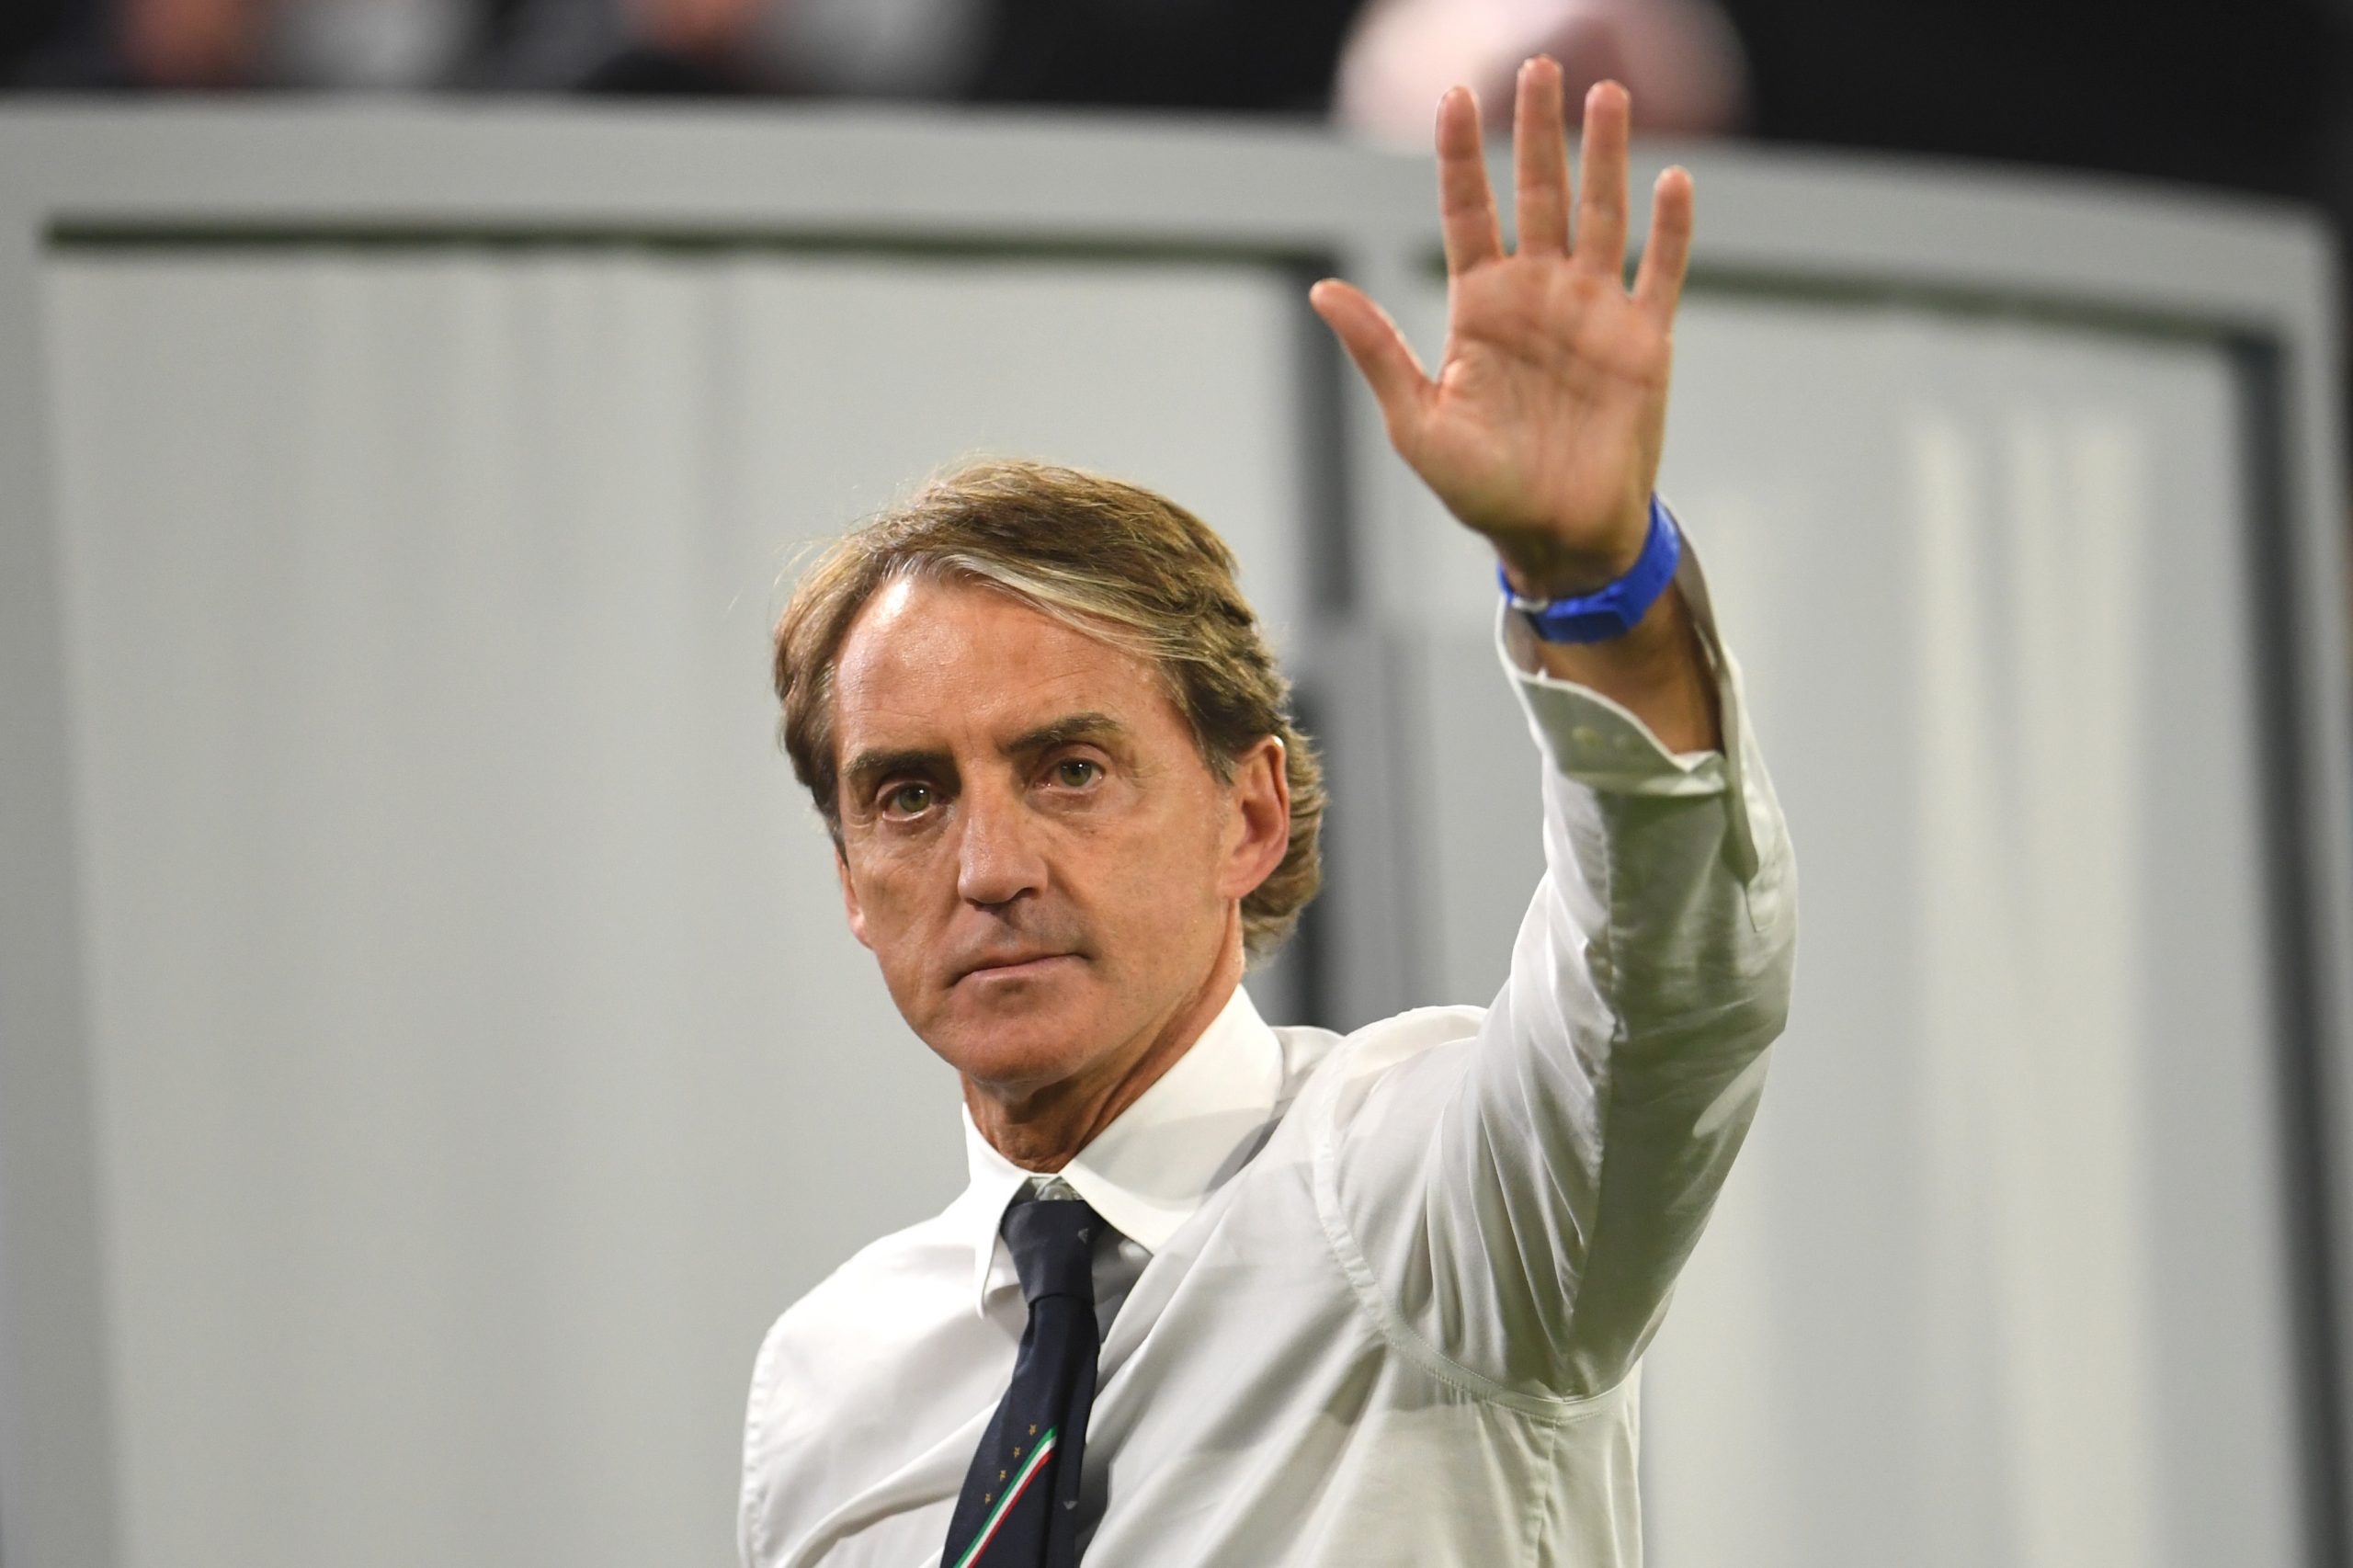 UFFICIALE – Mancini si è dimesso da ct della Nazionale italiana